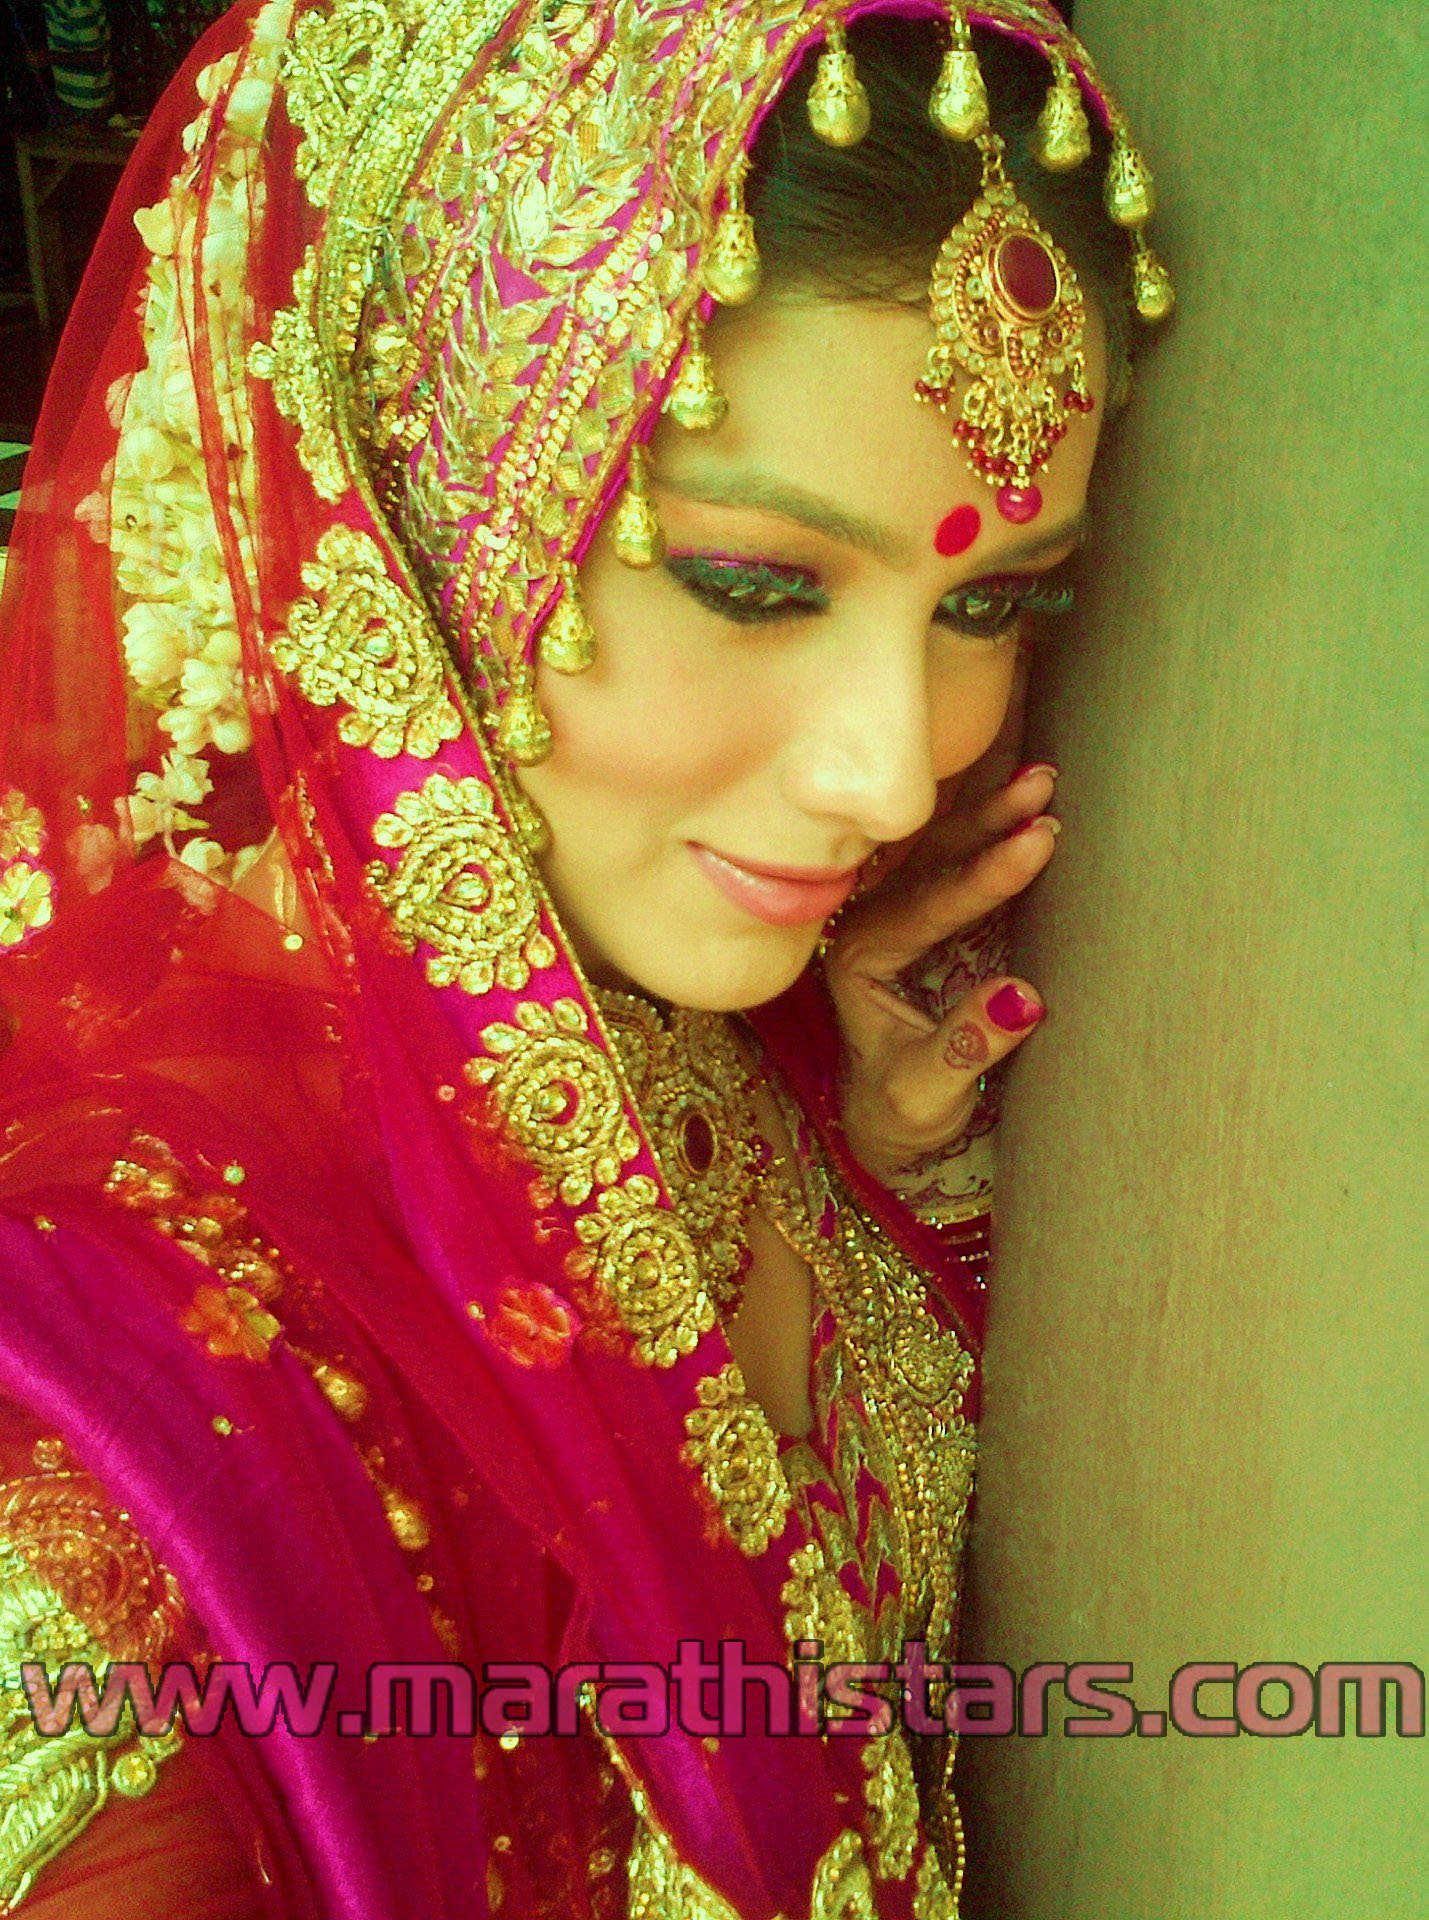 fond d'écran nom subhash,la mariée,sari,tradition,rose,mehndi